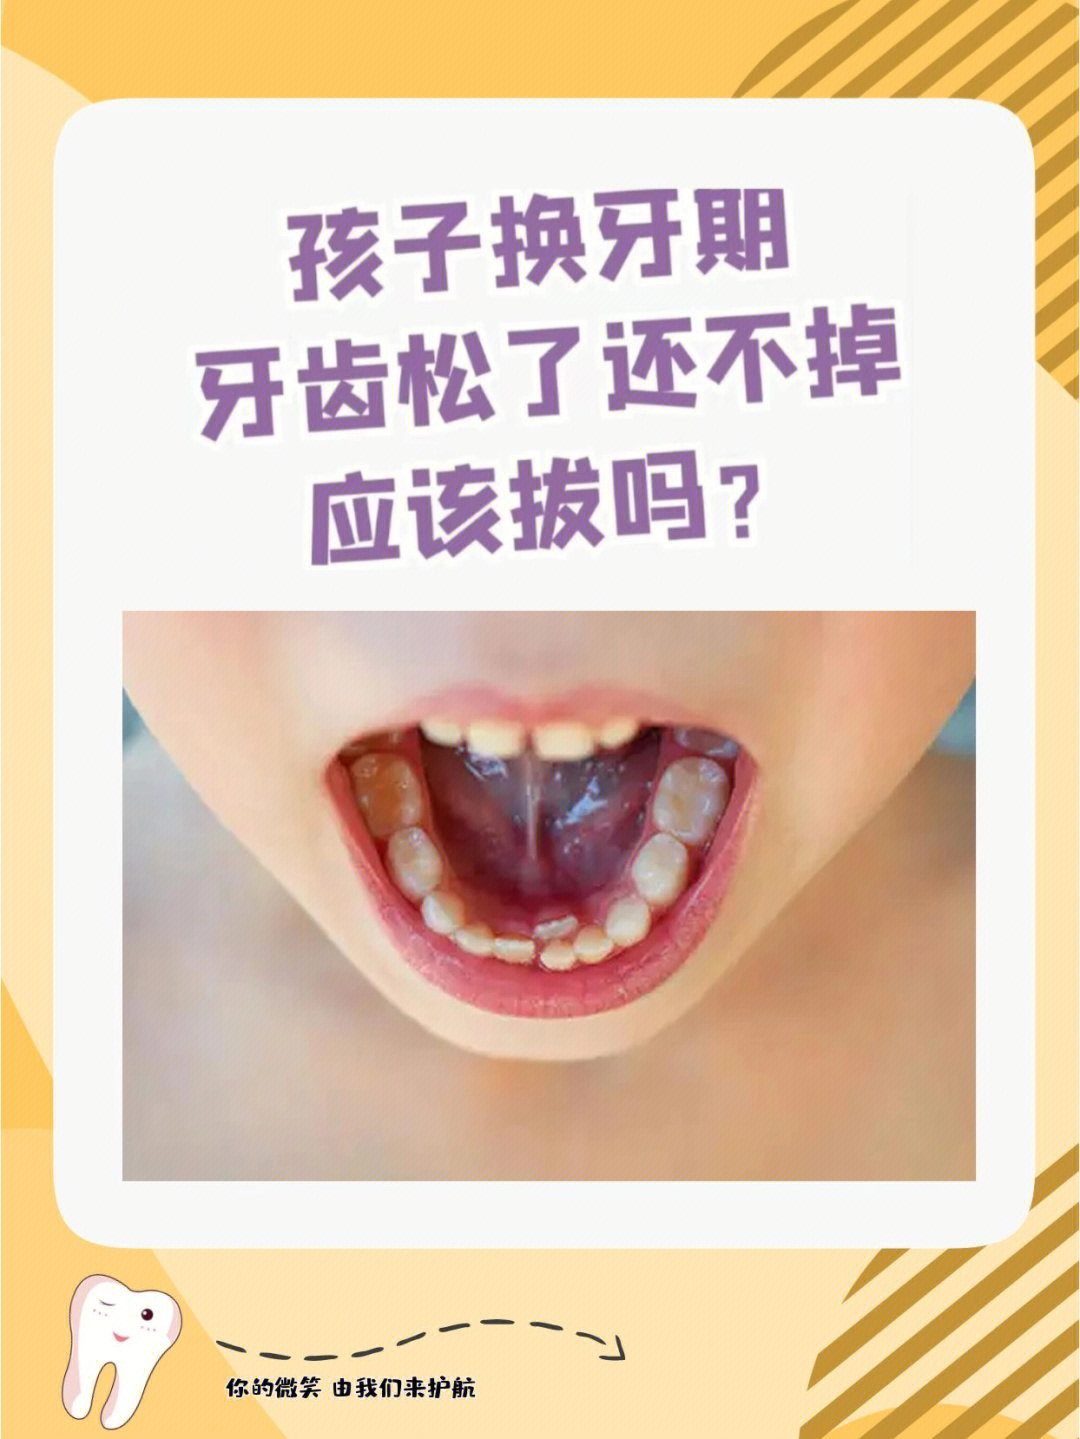 06稍不留意就导致恒牙萌出乳牙滞留(双排牙)06后期导致牙齿不齐!